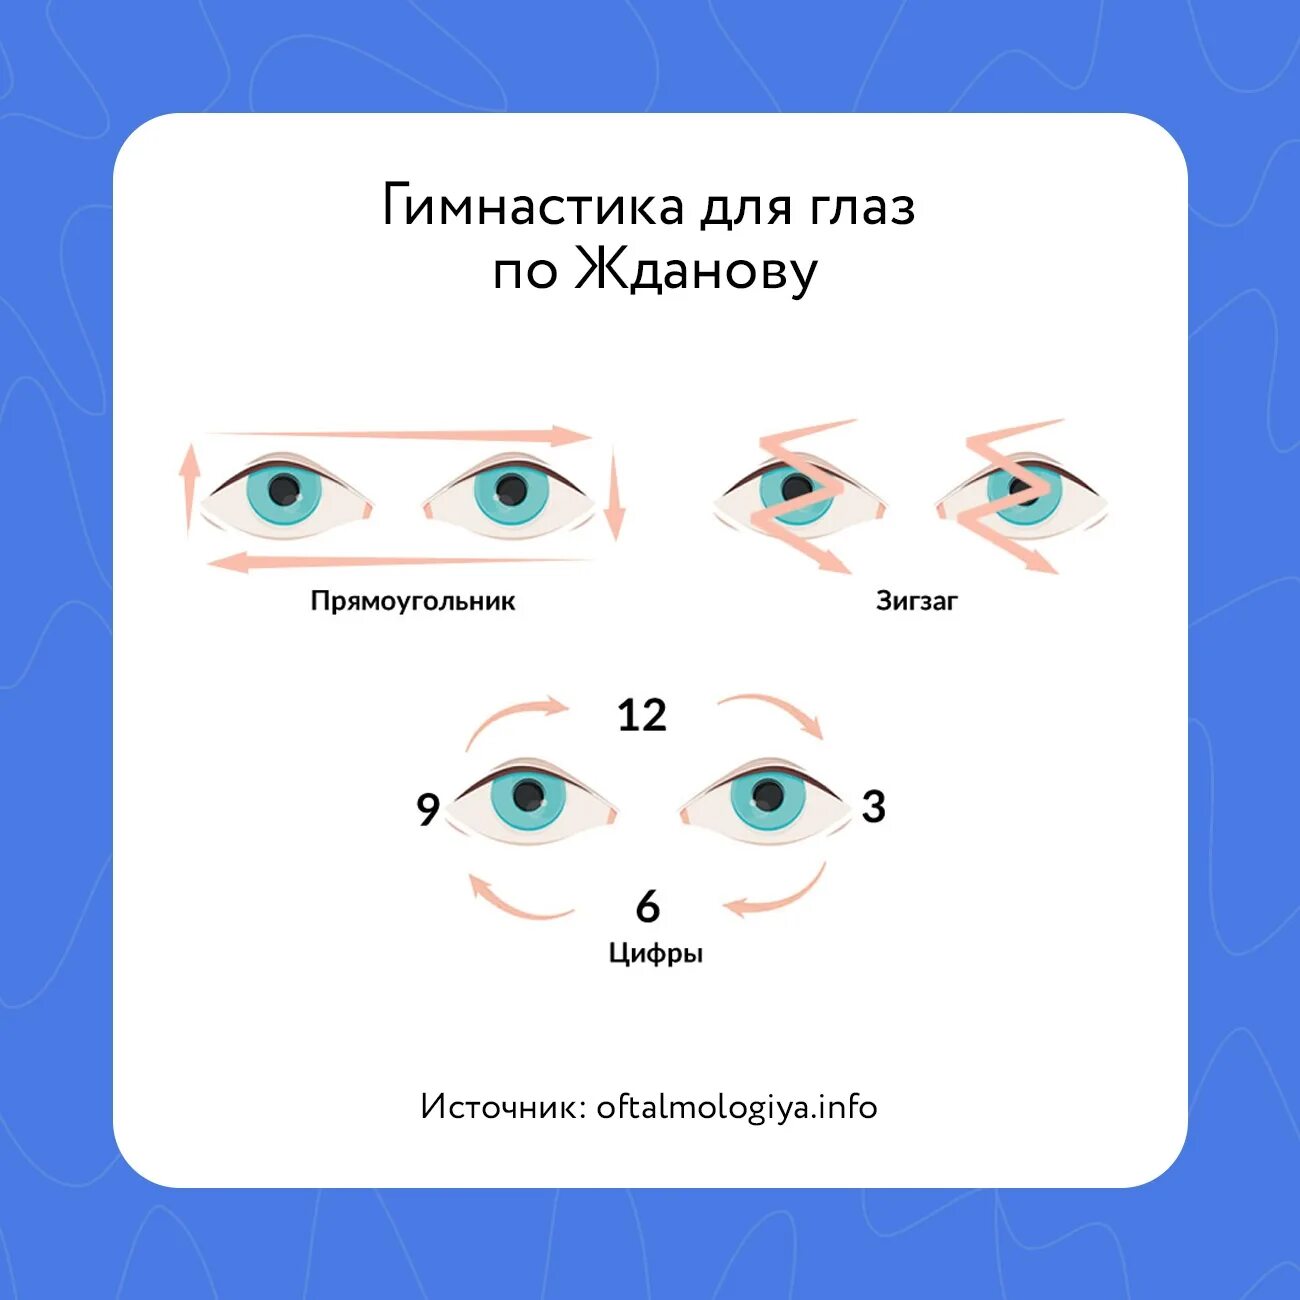 Видео для глаз для улучшения. Гимнастика для глаз для улучшения зрения. Разминка для глаз. Инфографика гимнастика для глаз. Физкультура для глаз для улучшения зрения.